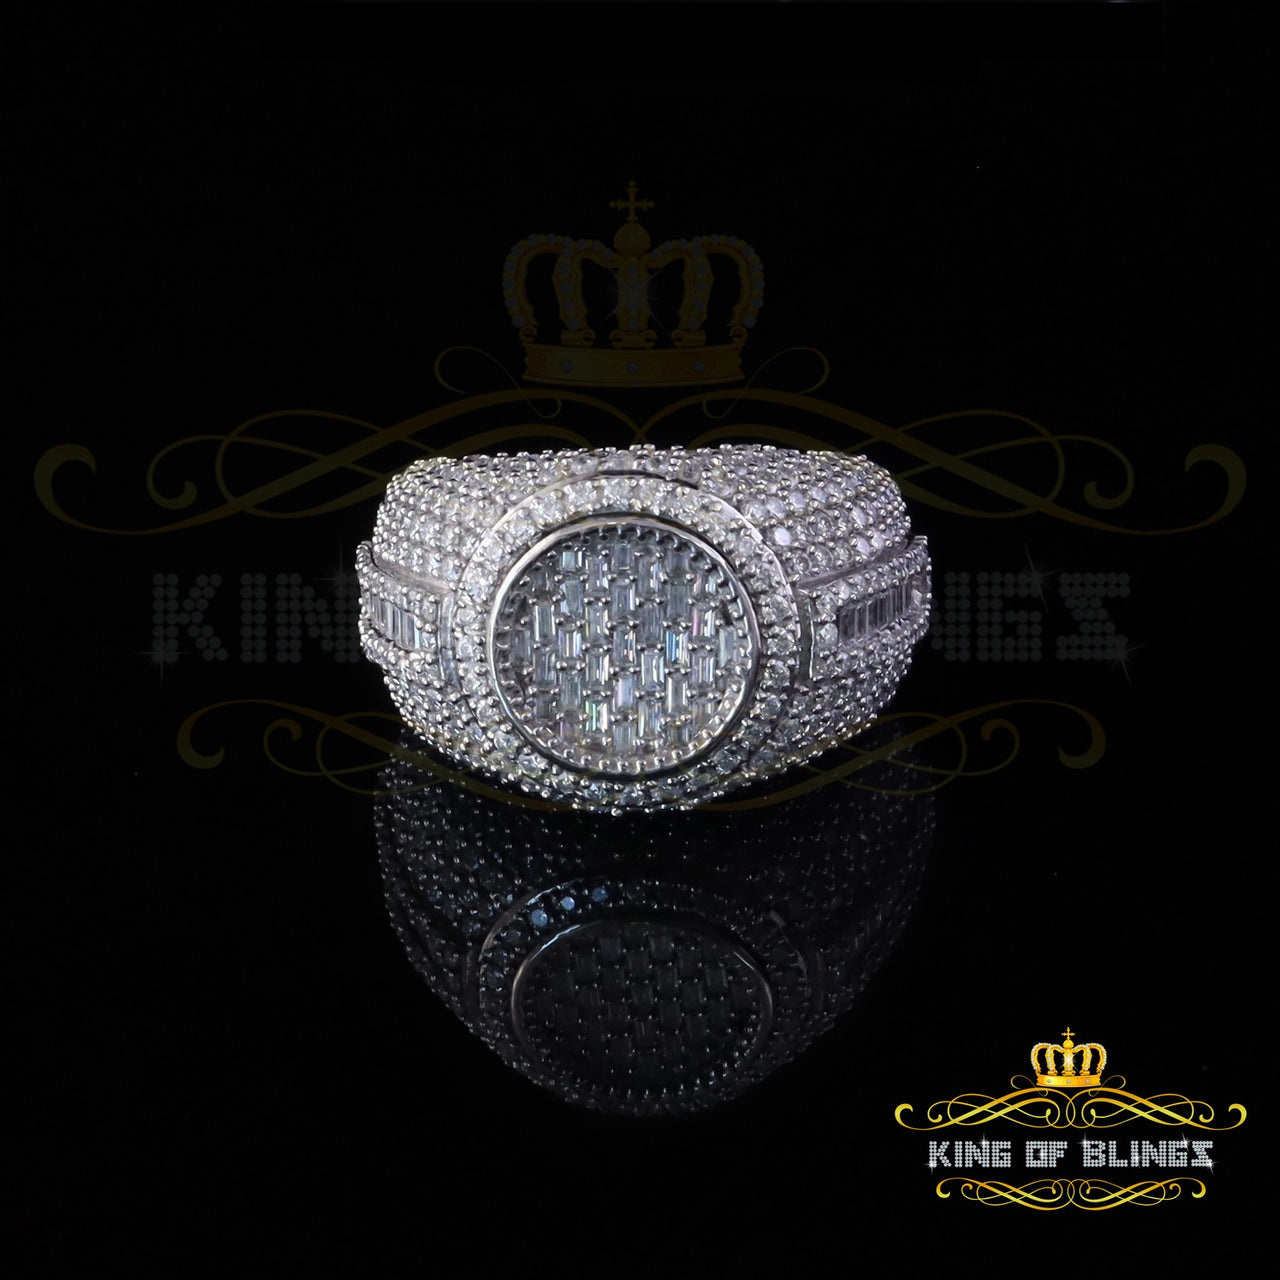 King of Bling's Men's/Womens 925 Silv White 5.50ct Buguette VVS 'D' Moissanite Round Ring SZ 10 King of Blings